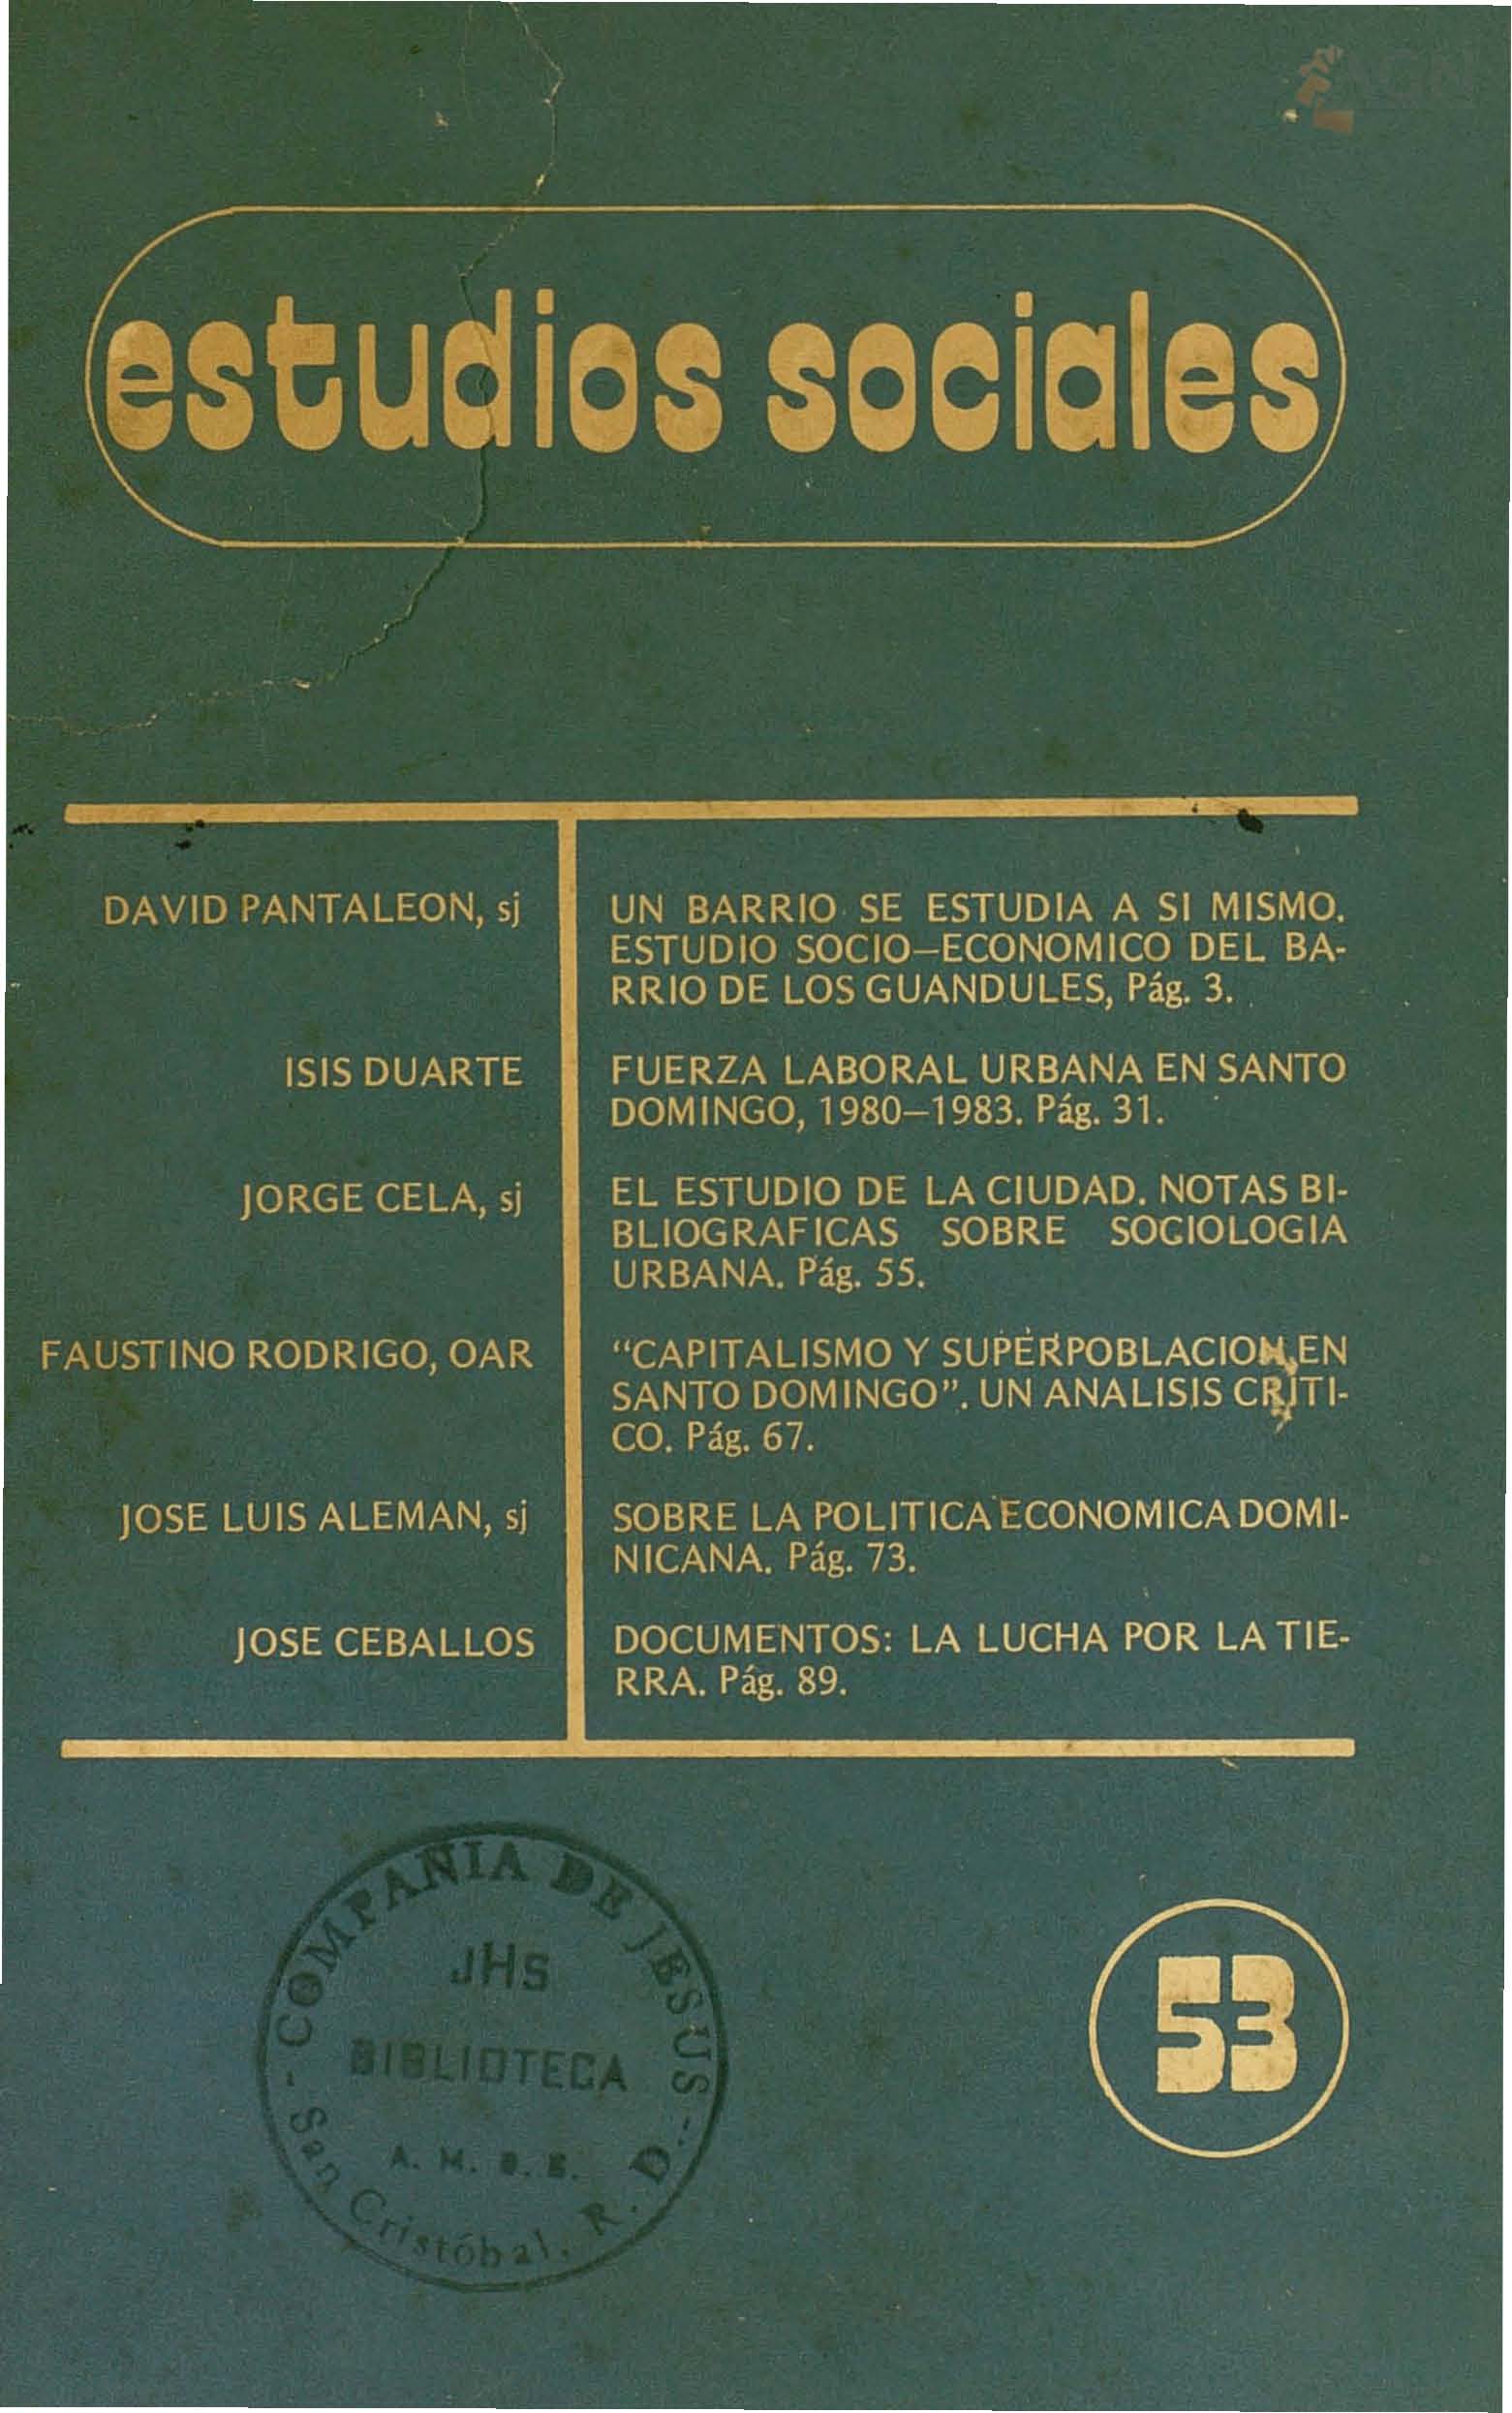 						Afficher Vol. 16 No 53 (1983): Sociología Urbana Dominicana
					